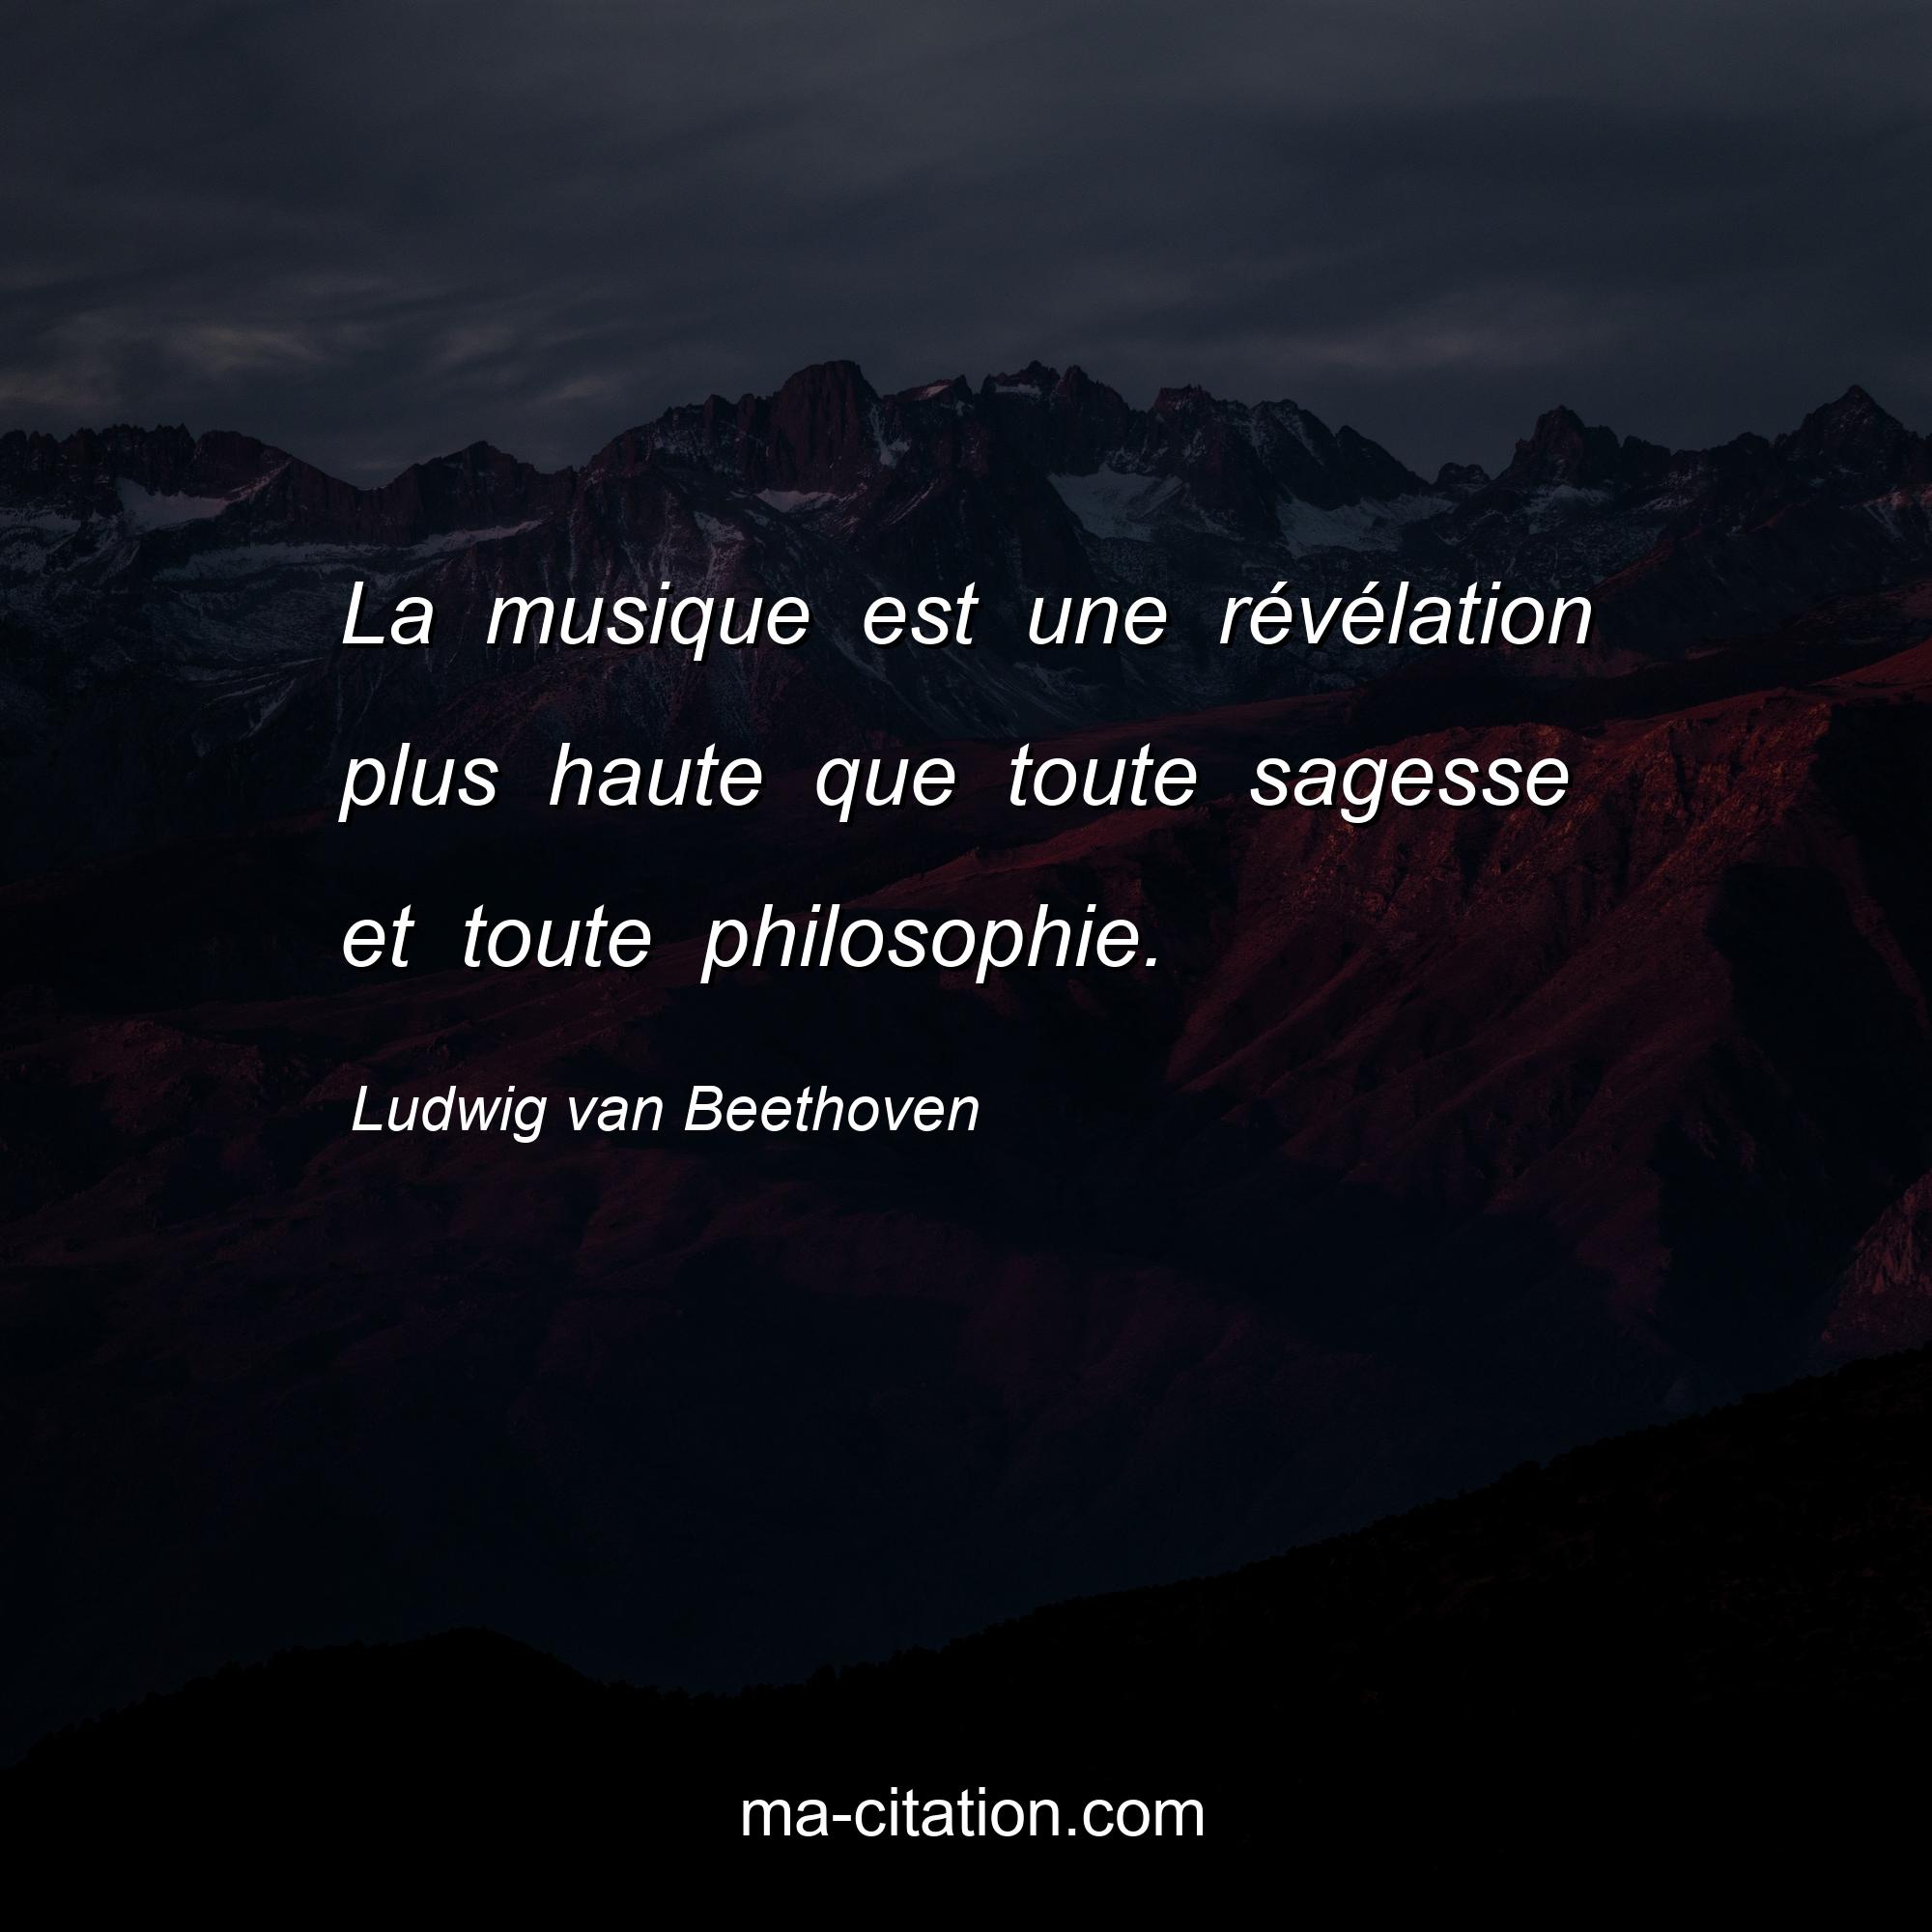 Ludwig van Beethoven : La musique est une révélation plus haute que toute sagesse et toute philosophie.